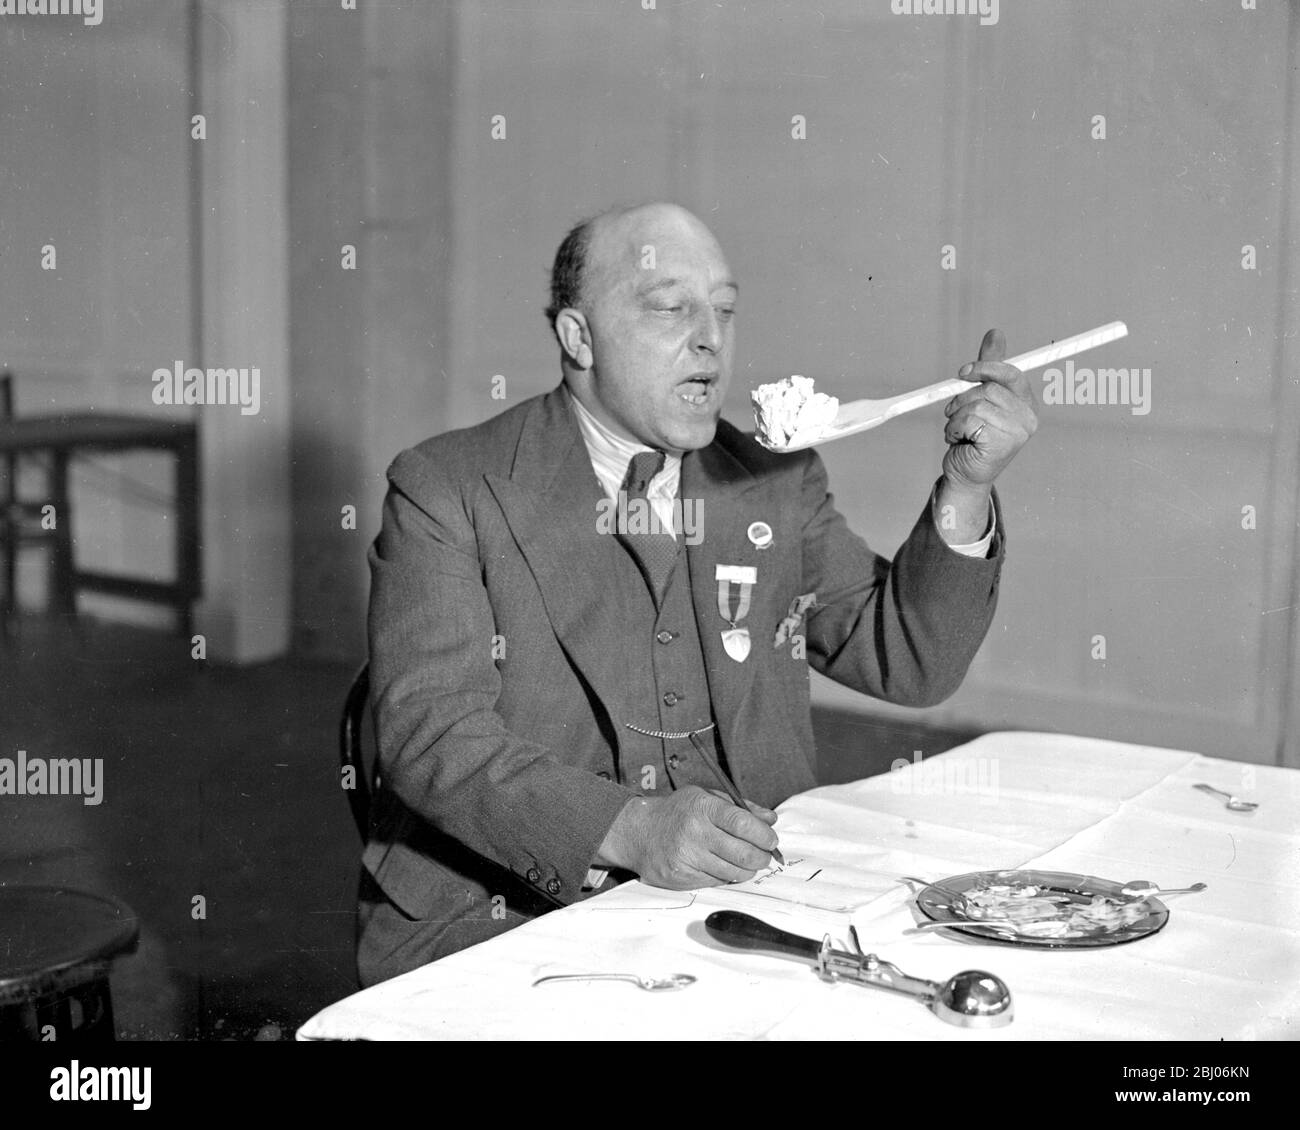 Des experts jugeant des expositions à l'Olympia sur la glace et le salon laitier. - M. F.J. Orth, le Président, avec les juges. - 2 janvier 1934 Banque D'Images